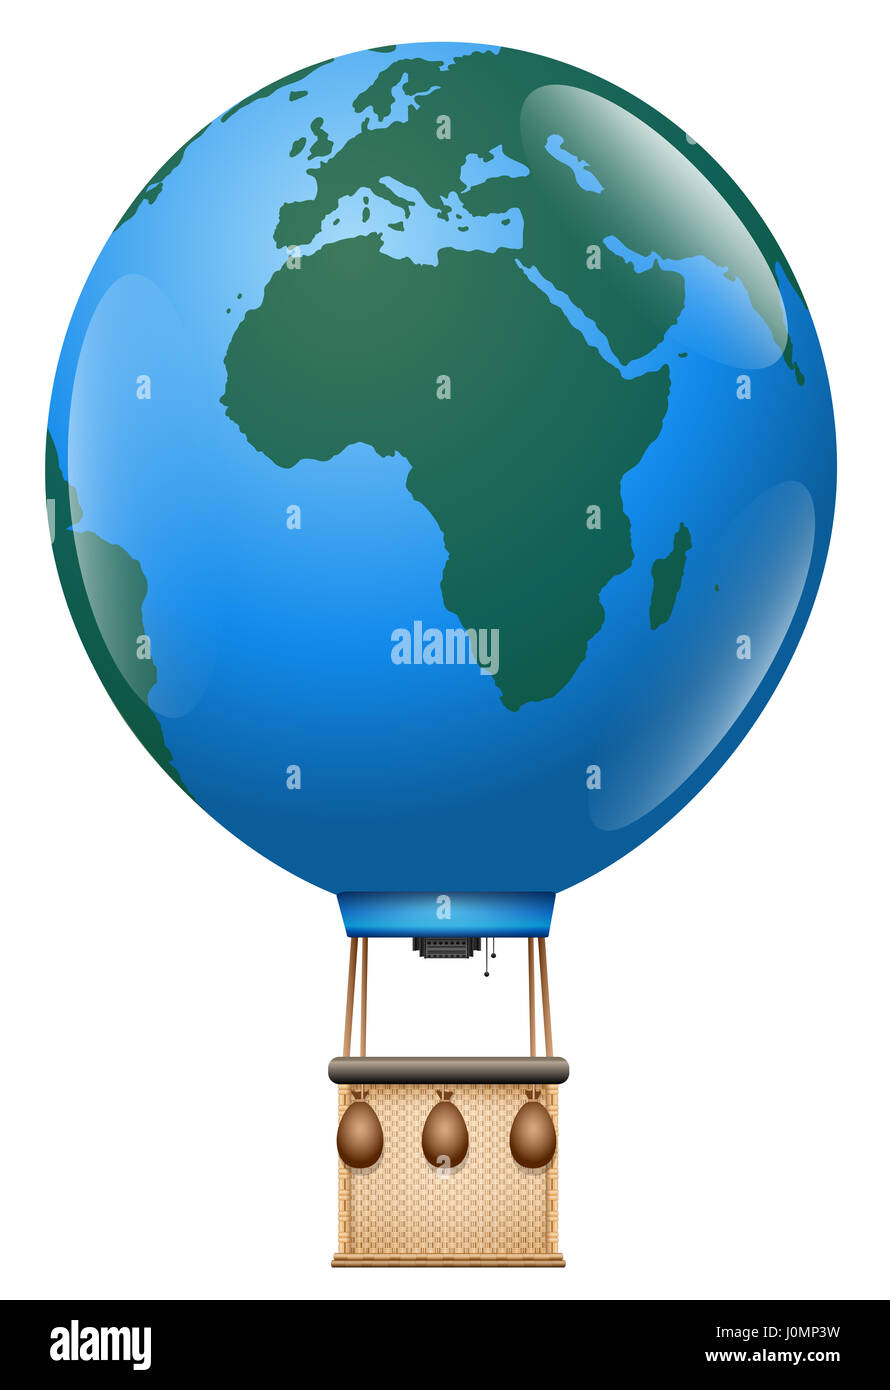 Europa Afrika-Reise - Heißluftballonfahrt mit Planet Erde Ballon und Vintage Korb auf der ganzen Welt - isoliert Abbildung auf weißem Hintergrund Stockfoto